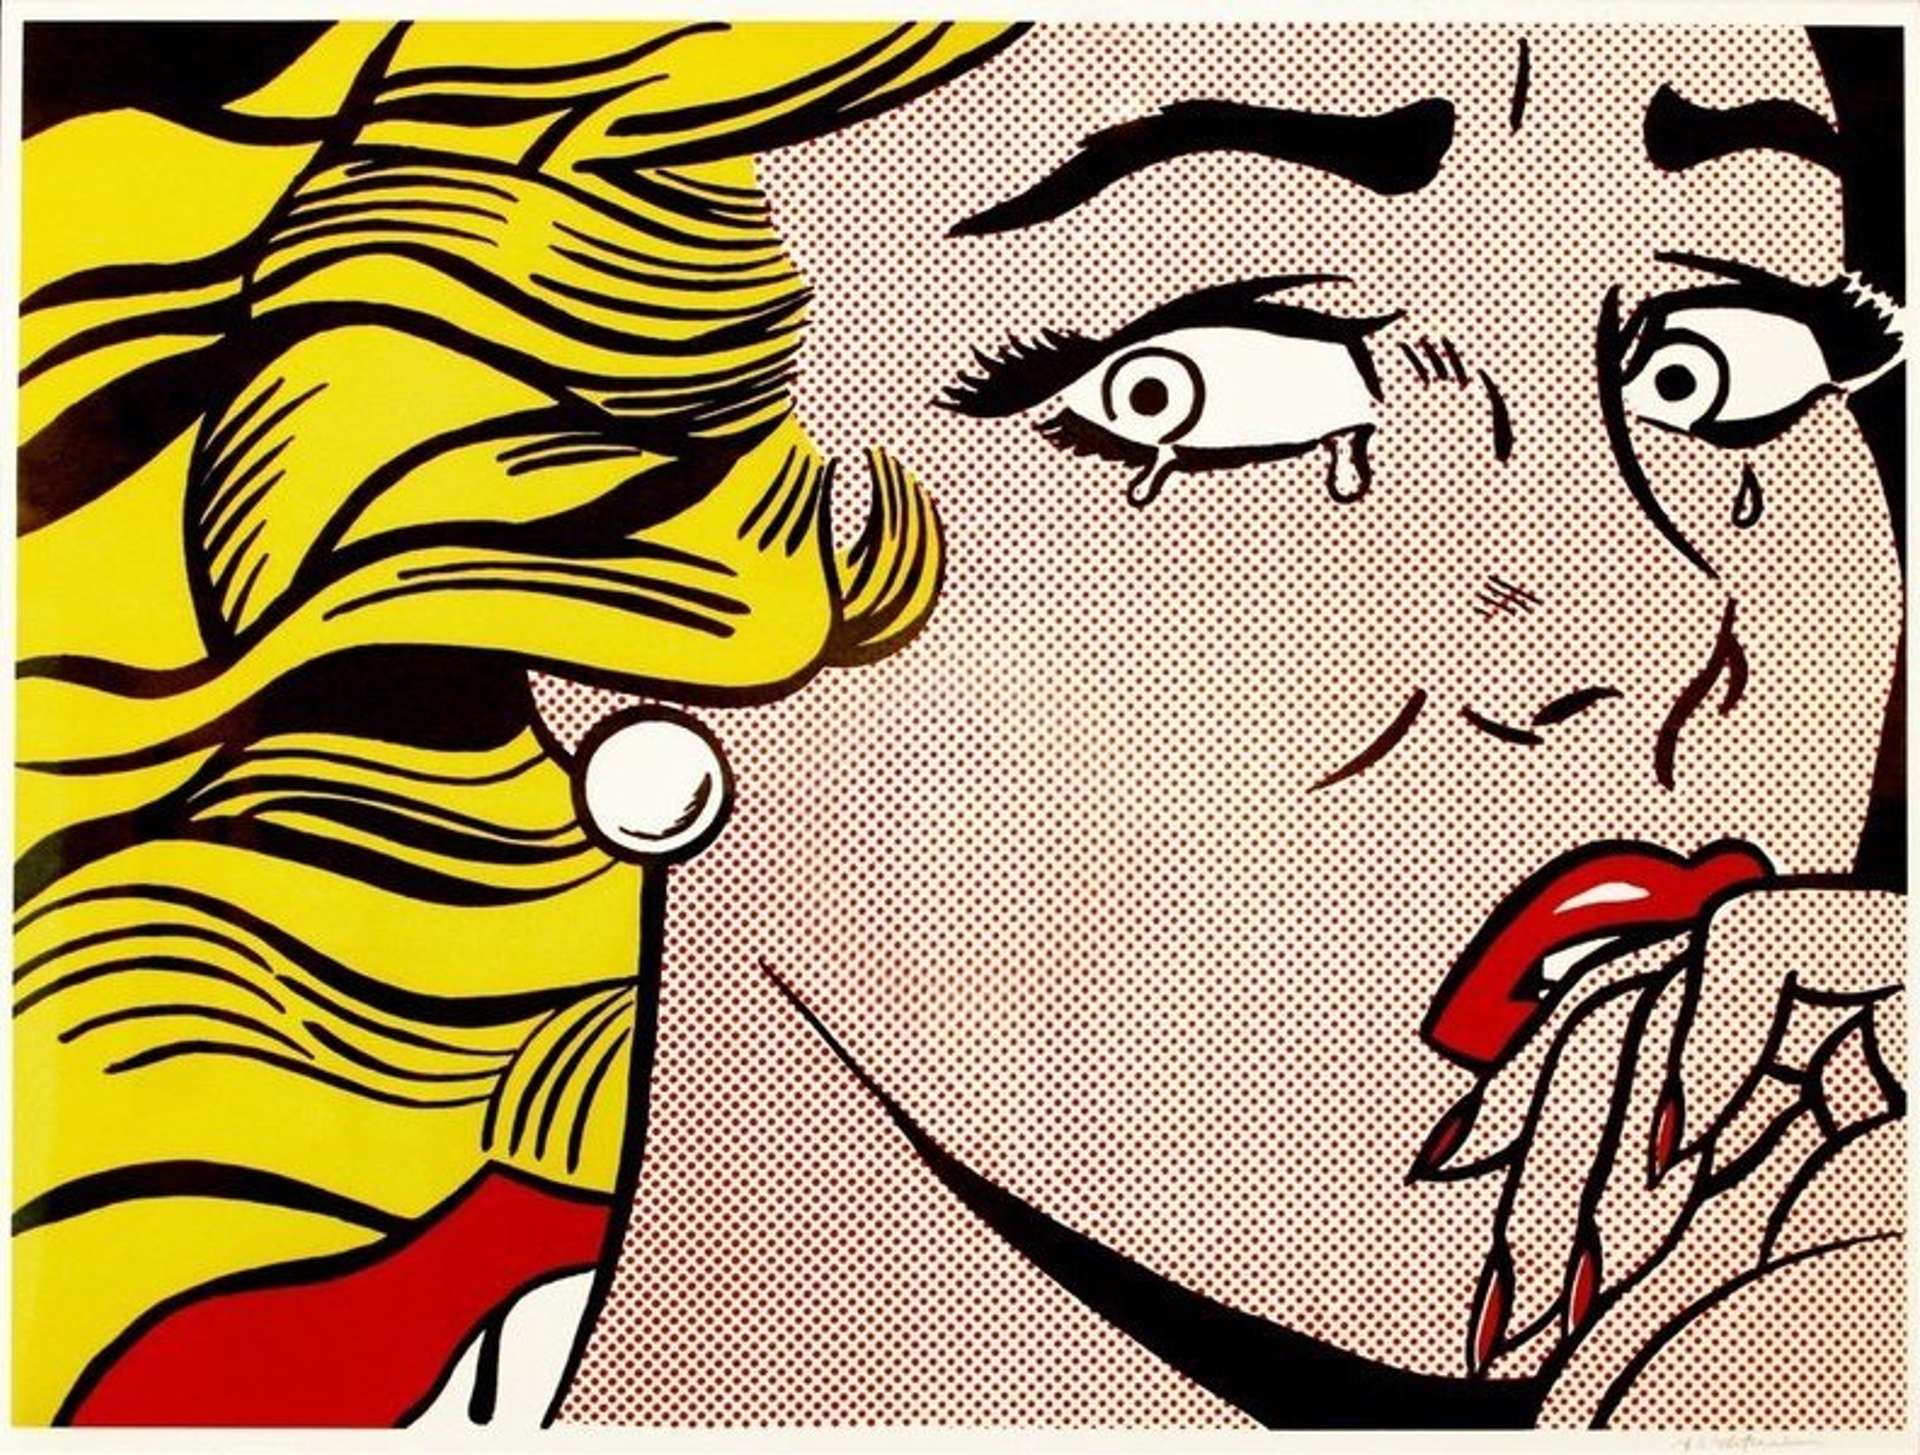 Crying Girl © Roy Lichtenstein 1963 | MyArtBroker